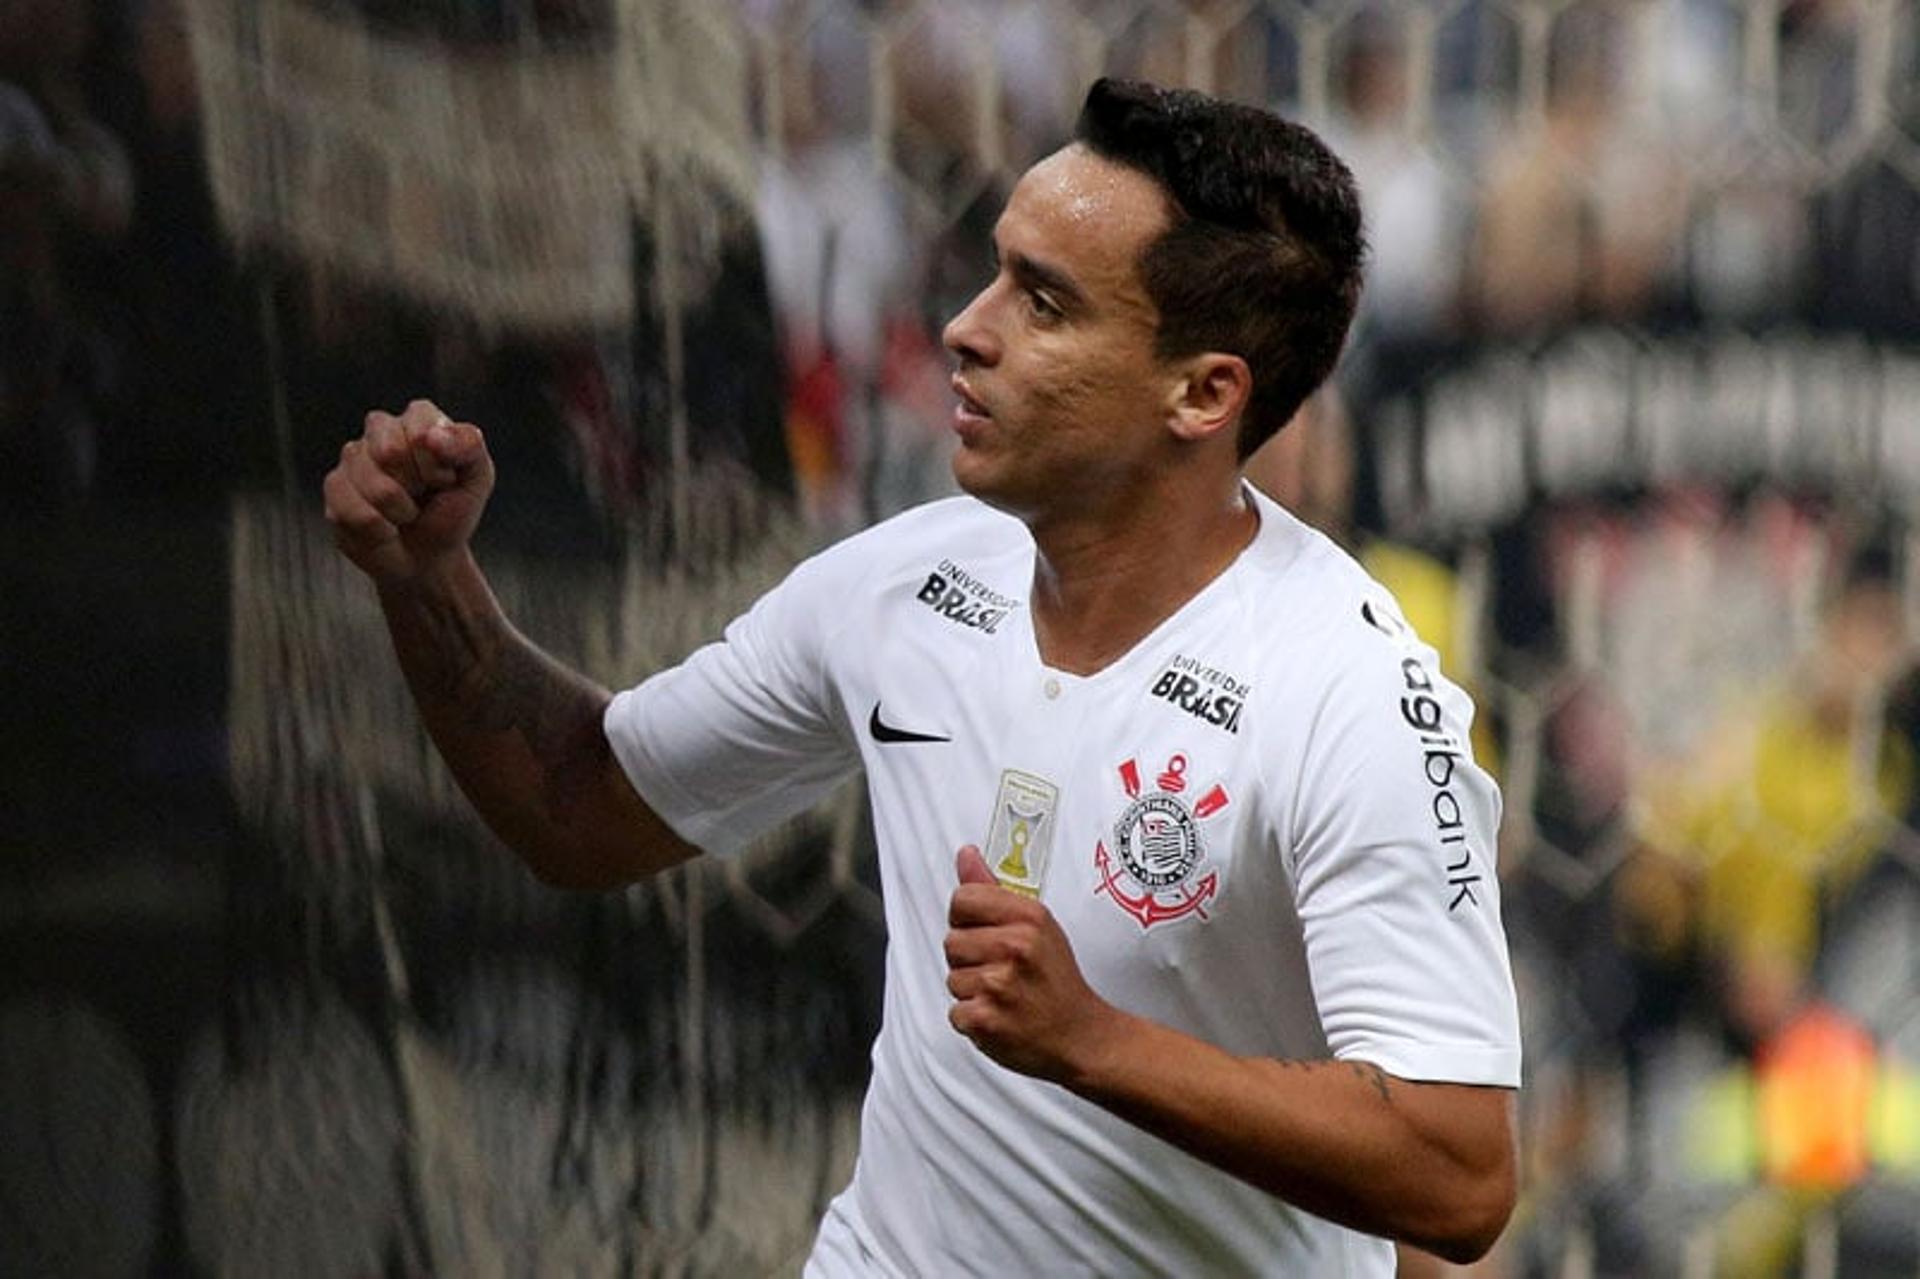 O Corinthians venceu o América-MG por 1 a 0, na Arena Corinthians, e encerrou jejum de três partidas. O autor do gol solitário foi Jadson, que acabou com a melhor nota. Após marcar, a equipe apenas administrou o resultdo (notas por Vitor Chicarolli)